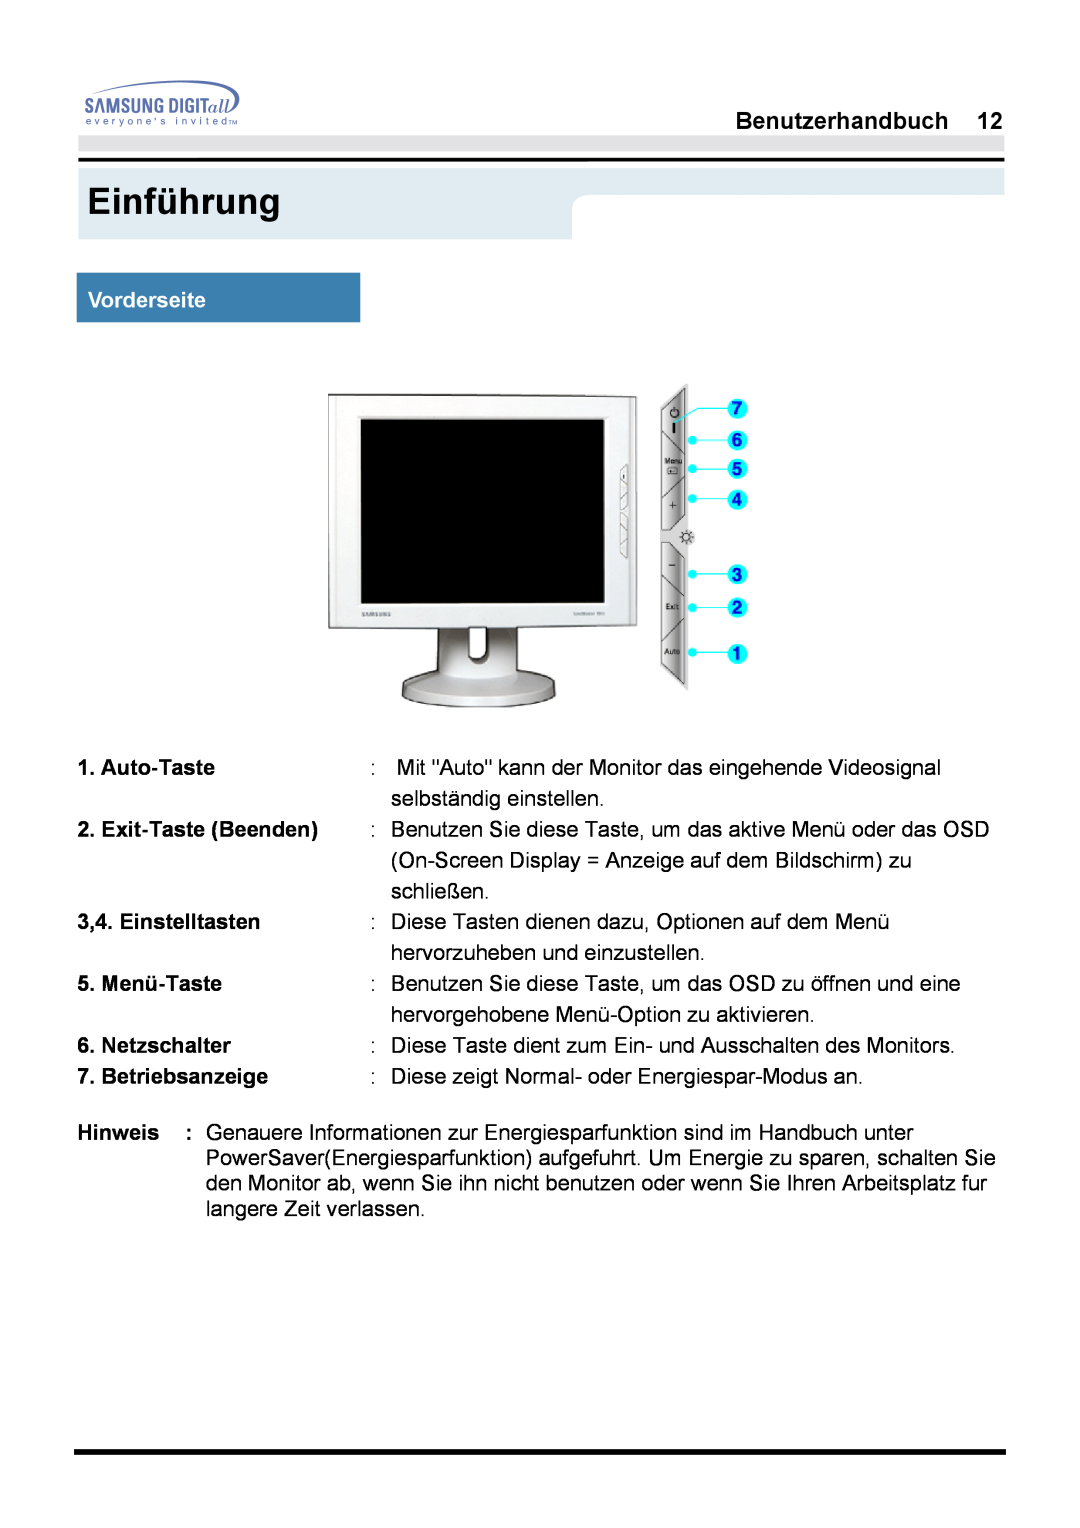 Samsung GH17LSSN/EDC Vorderseite, Einführung, Benutzerhandbuch, Auto-Taste, 3,4. Einstelltasten, Menü-Taste, Netzschalter 